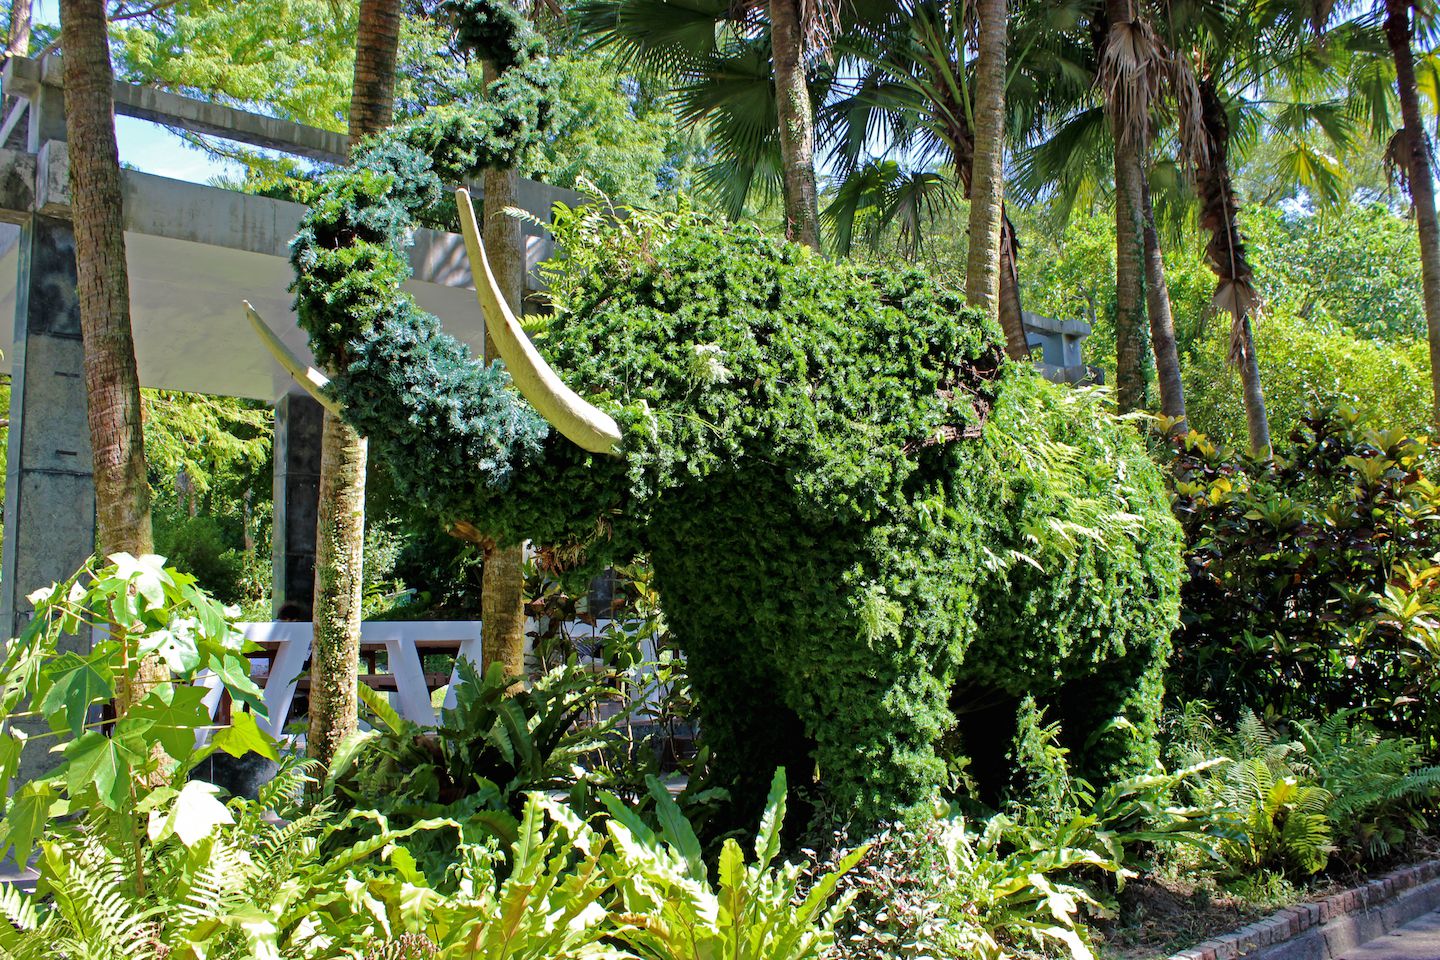 Elephant-shaped tree